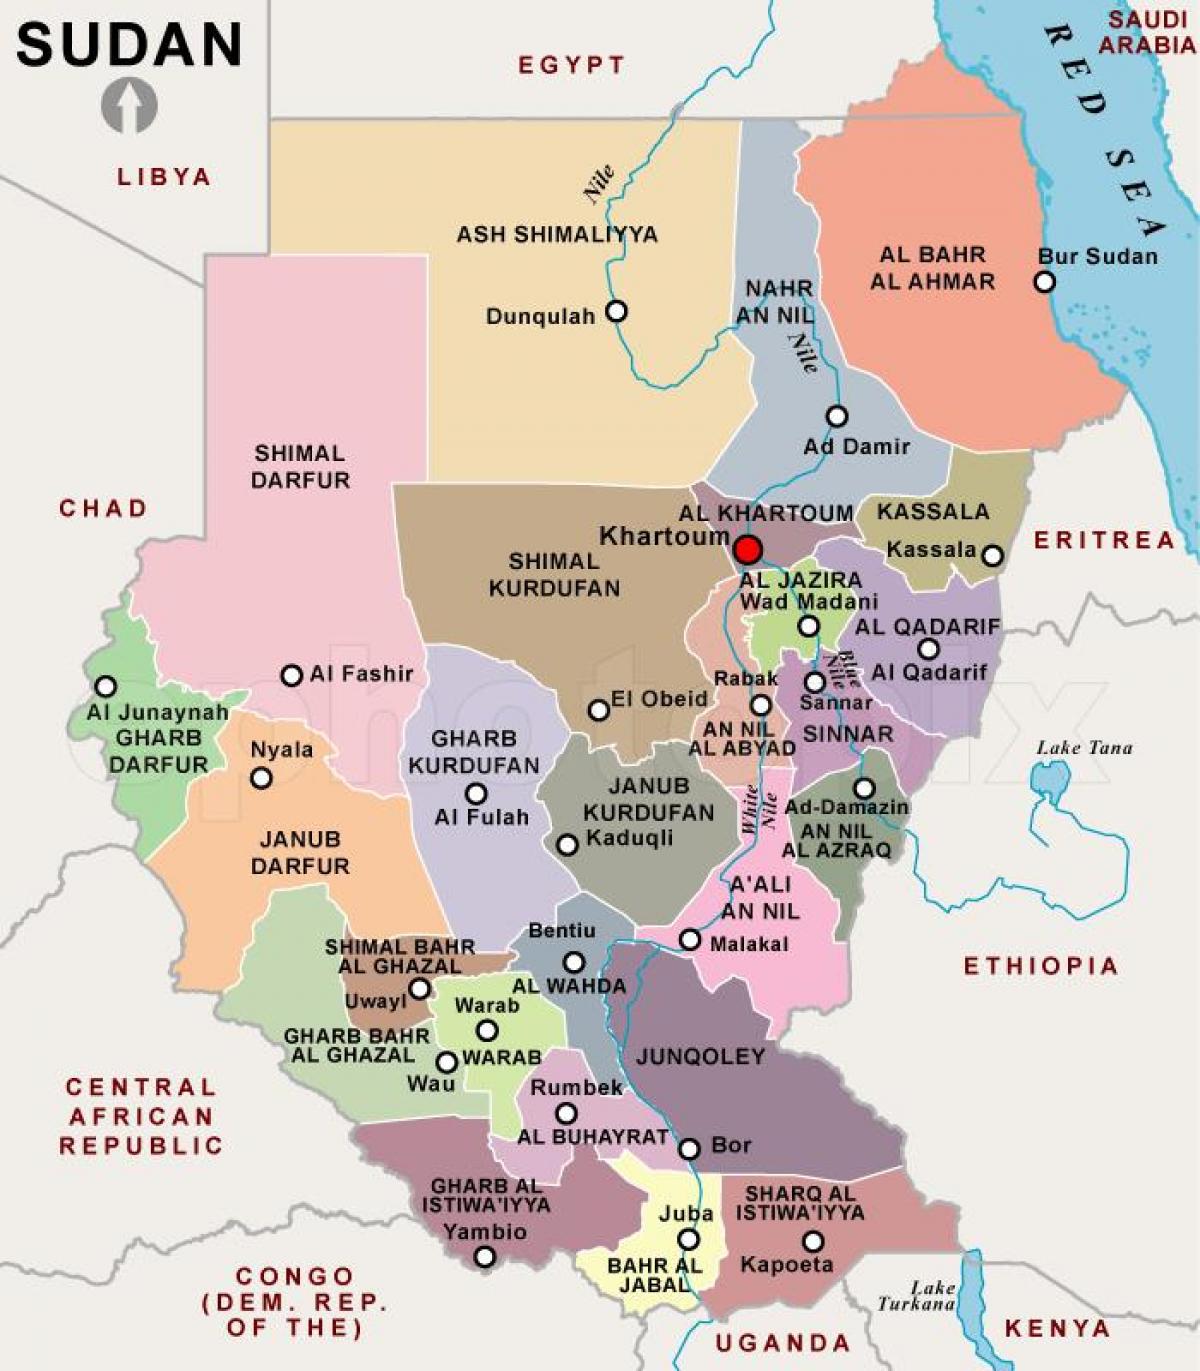 Regije Sudan - karta regije Sudanu (Sjeverna Afrika - Afrika)